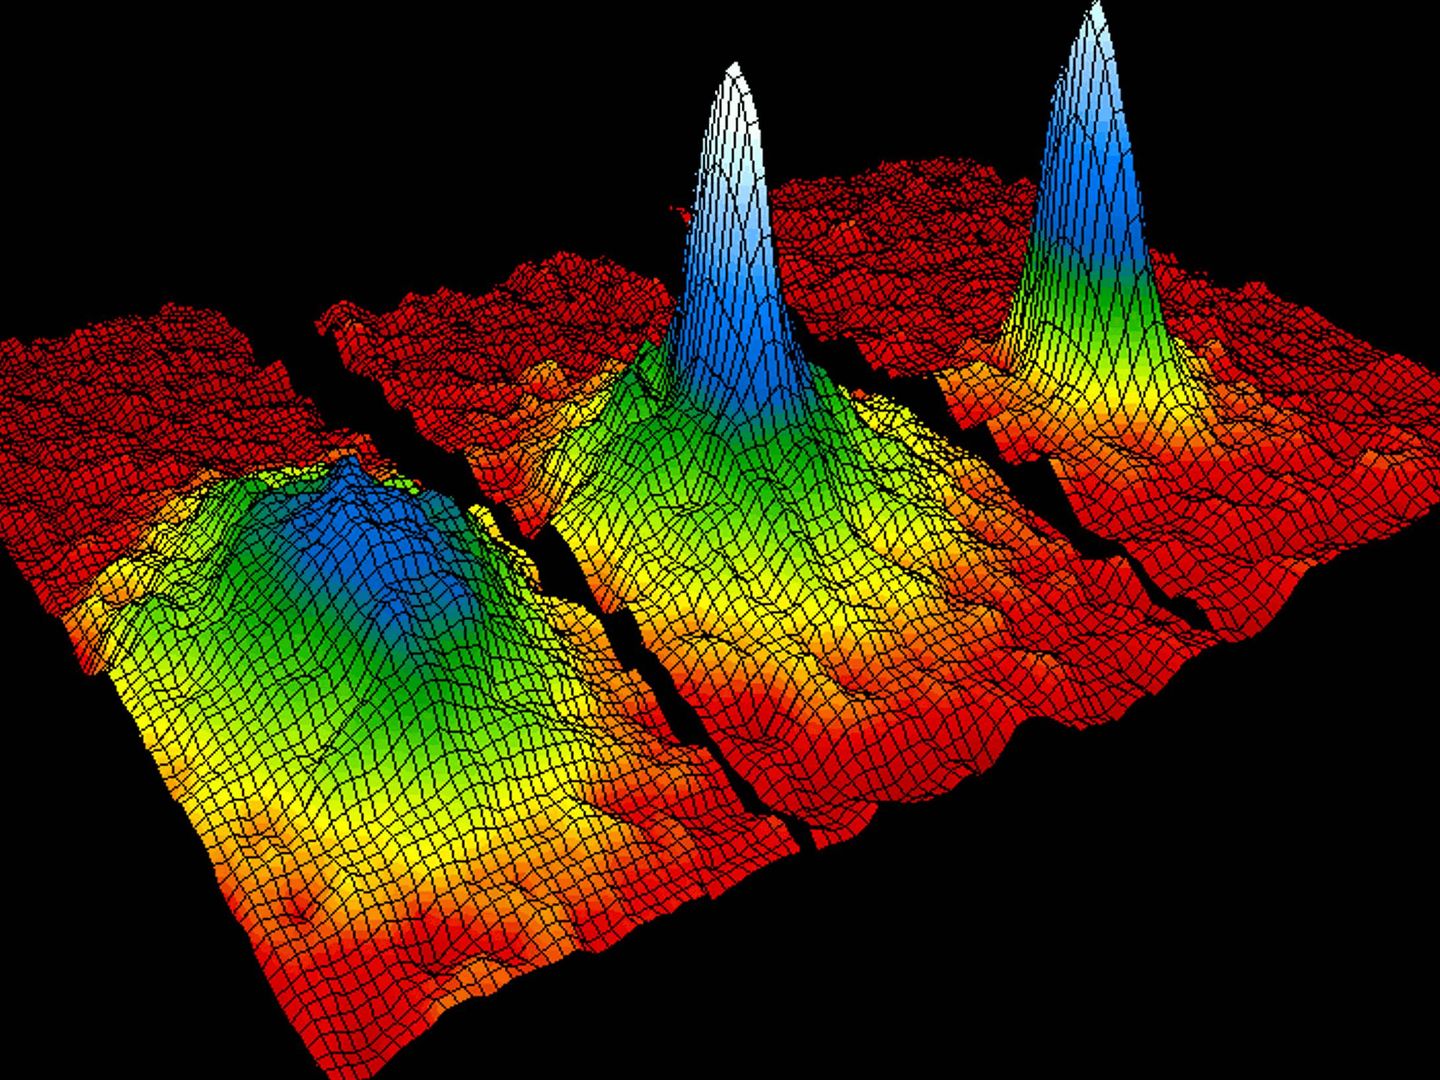 Representación del condensado de Bose-Einstein, estado de agregación de la materia que se da en ciertos materiales a temperaturas cercanas al cero absoluto. La coloración indica la cantidad de átomos moviéndose a cada velocidad, donde el blanco y el azul son las velocidades más bajas